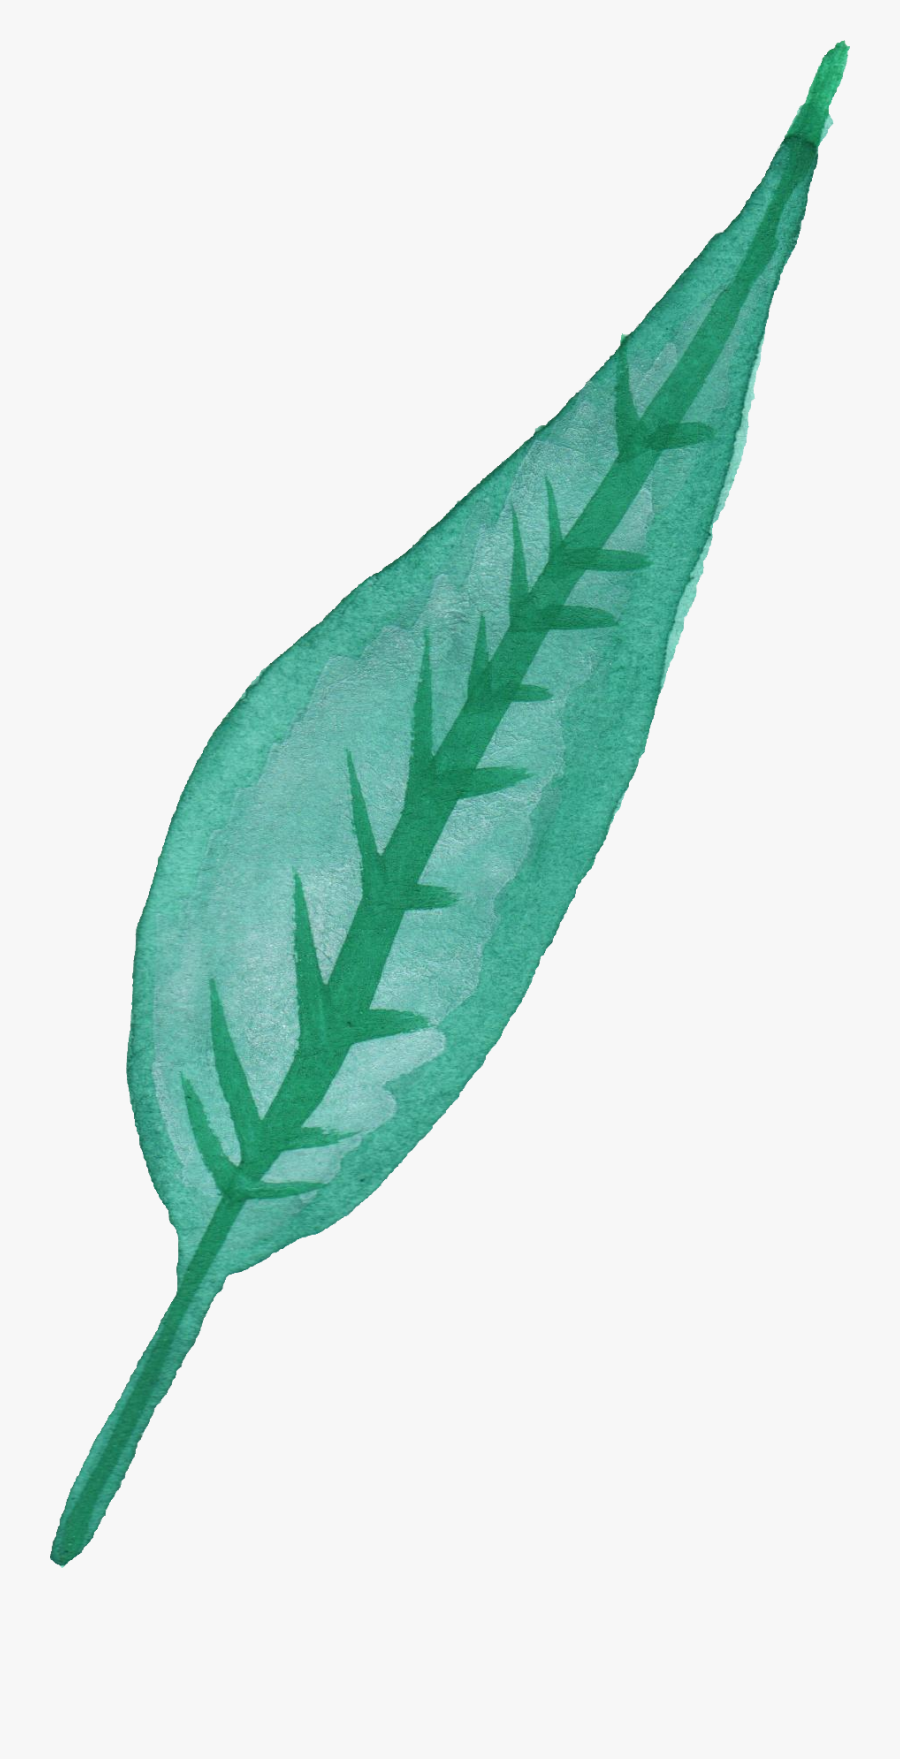 Blue Leaves Watercolor Transparent, Transparent Clipart